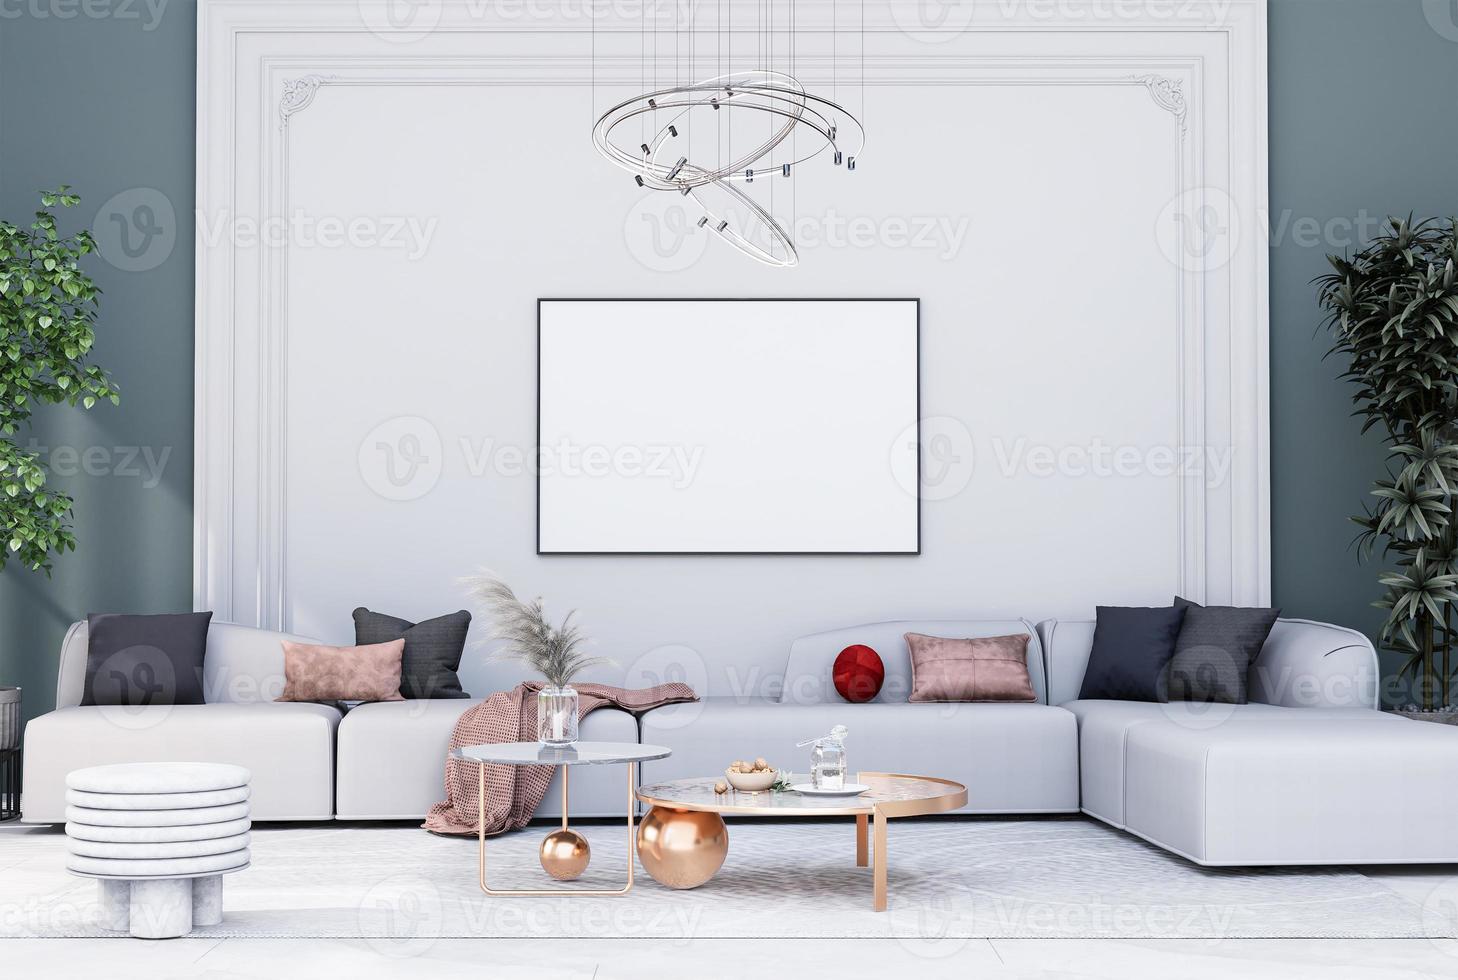 marco de póster simulado en interiores modernos habitaciones completamente amuebladas fondo, sala de estar, foto